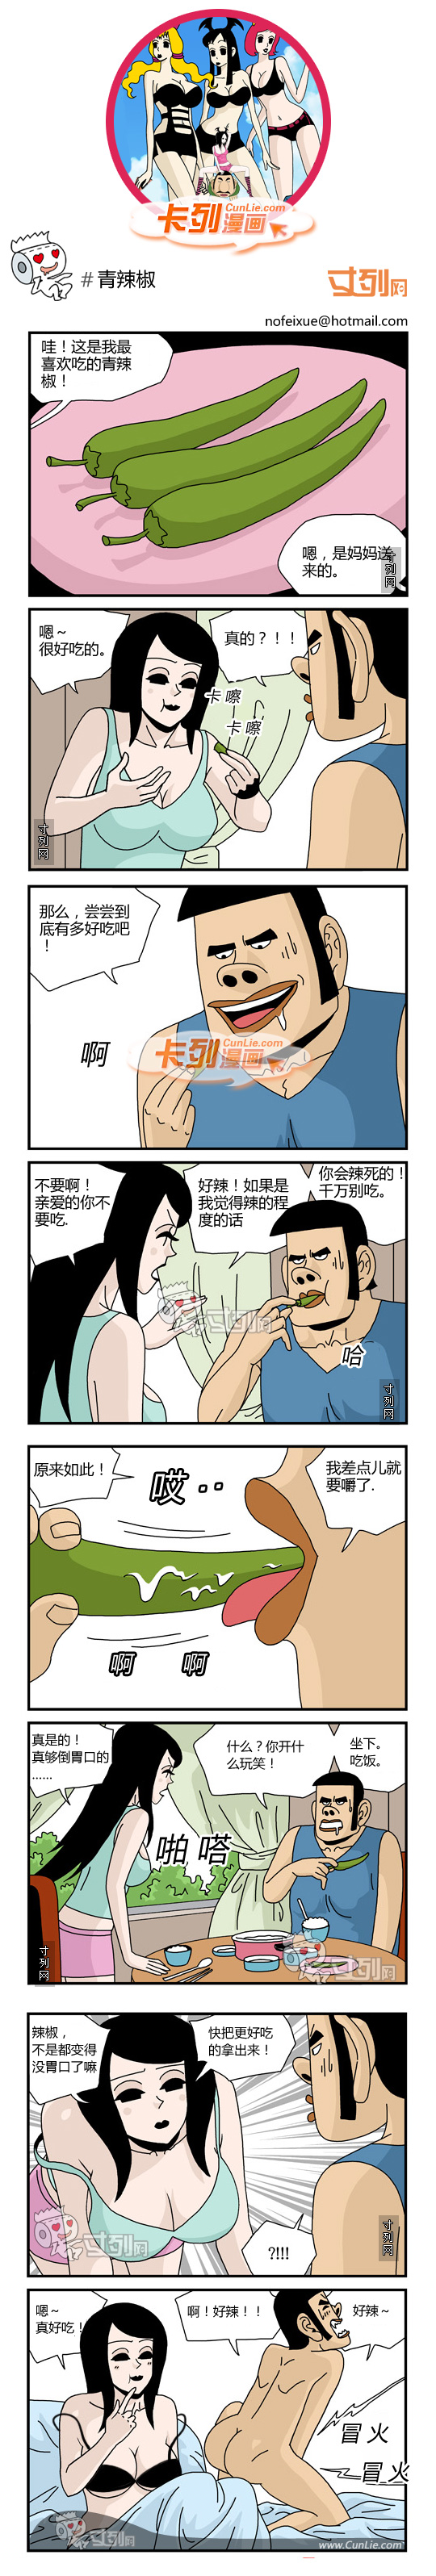 卡列漫画青辣椒